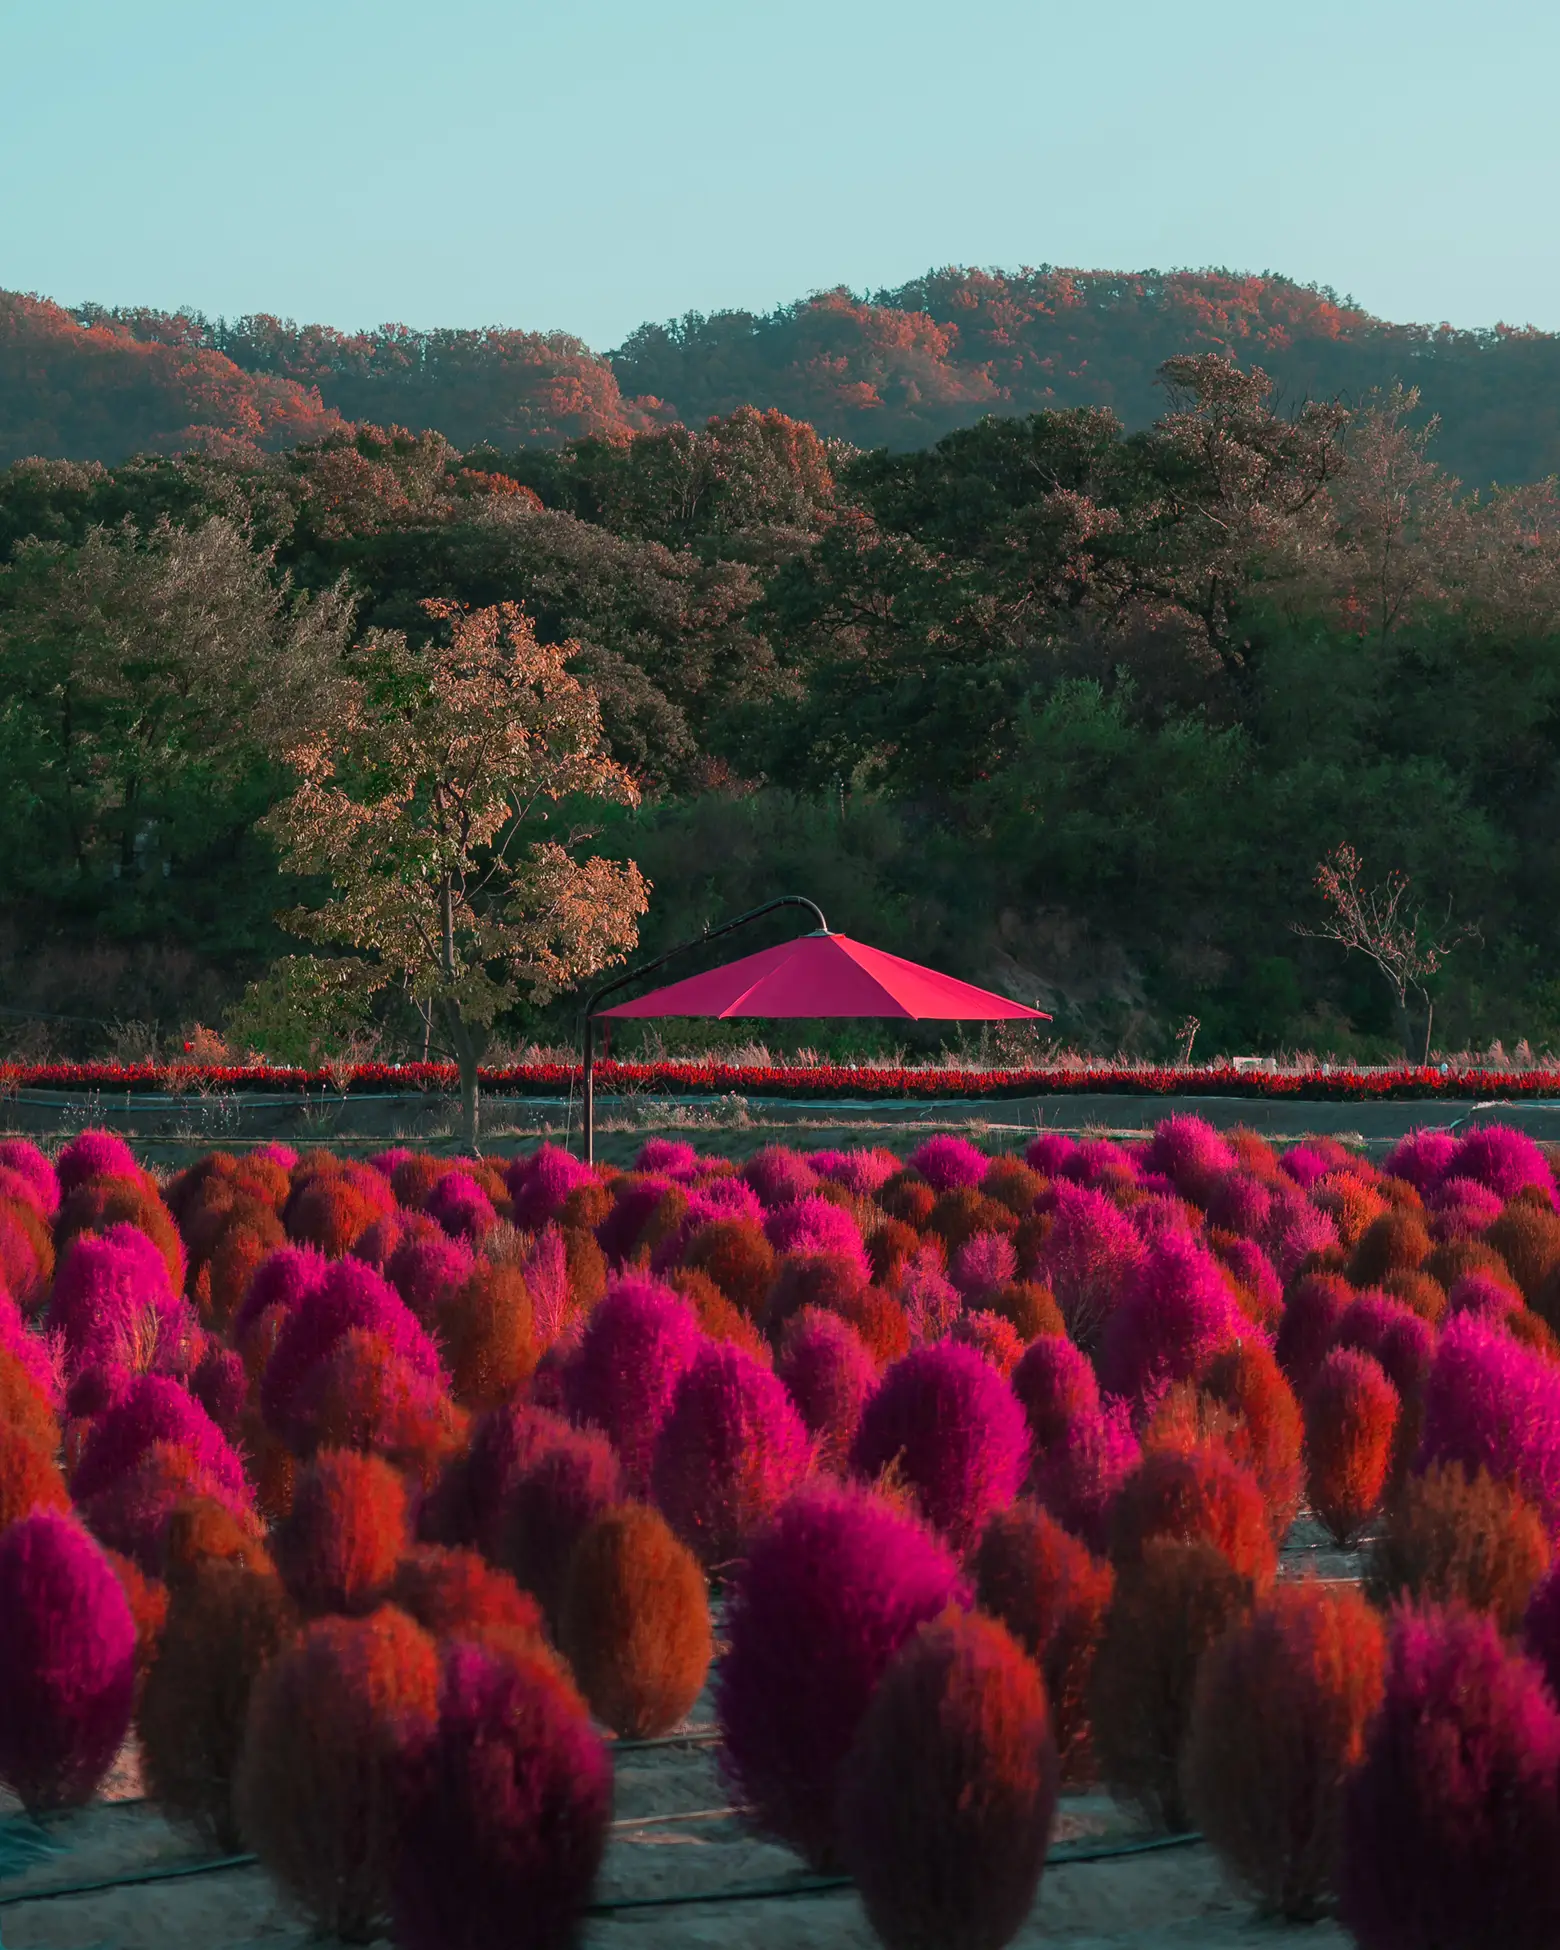 🍁 Have a pink autumn at Nari Park, Korea Travel